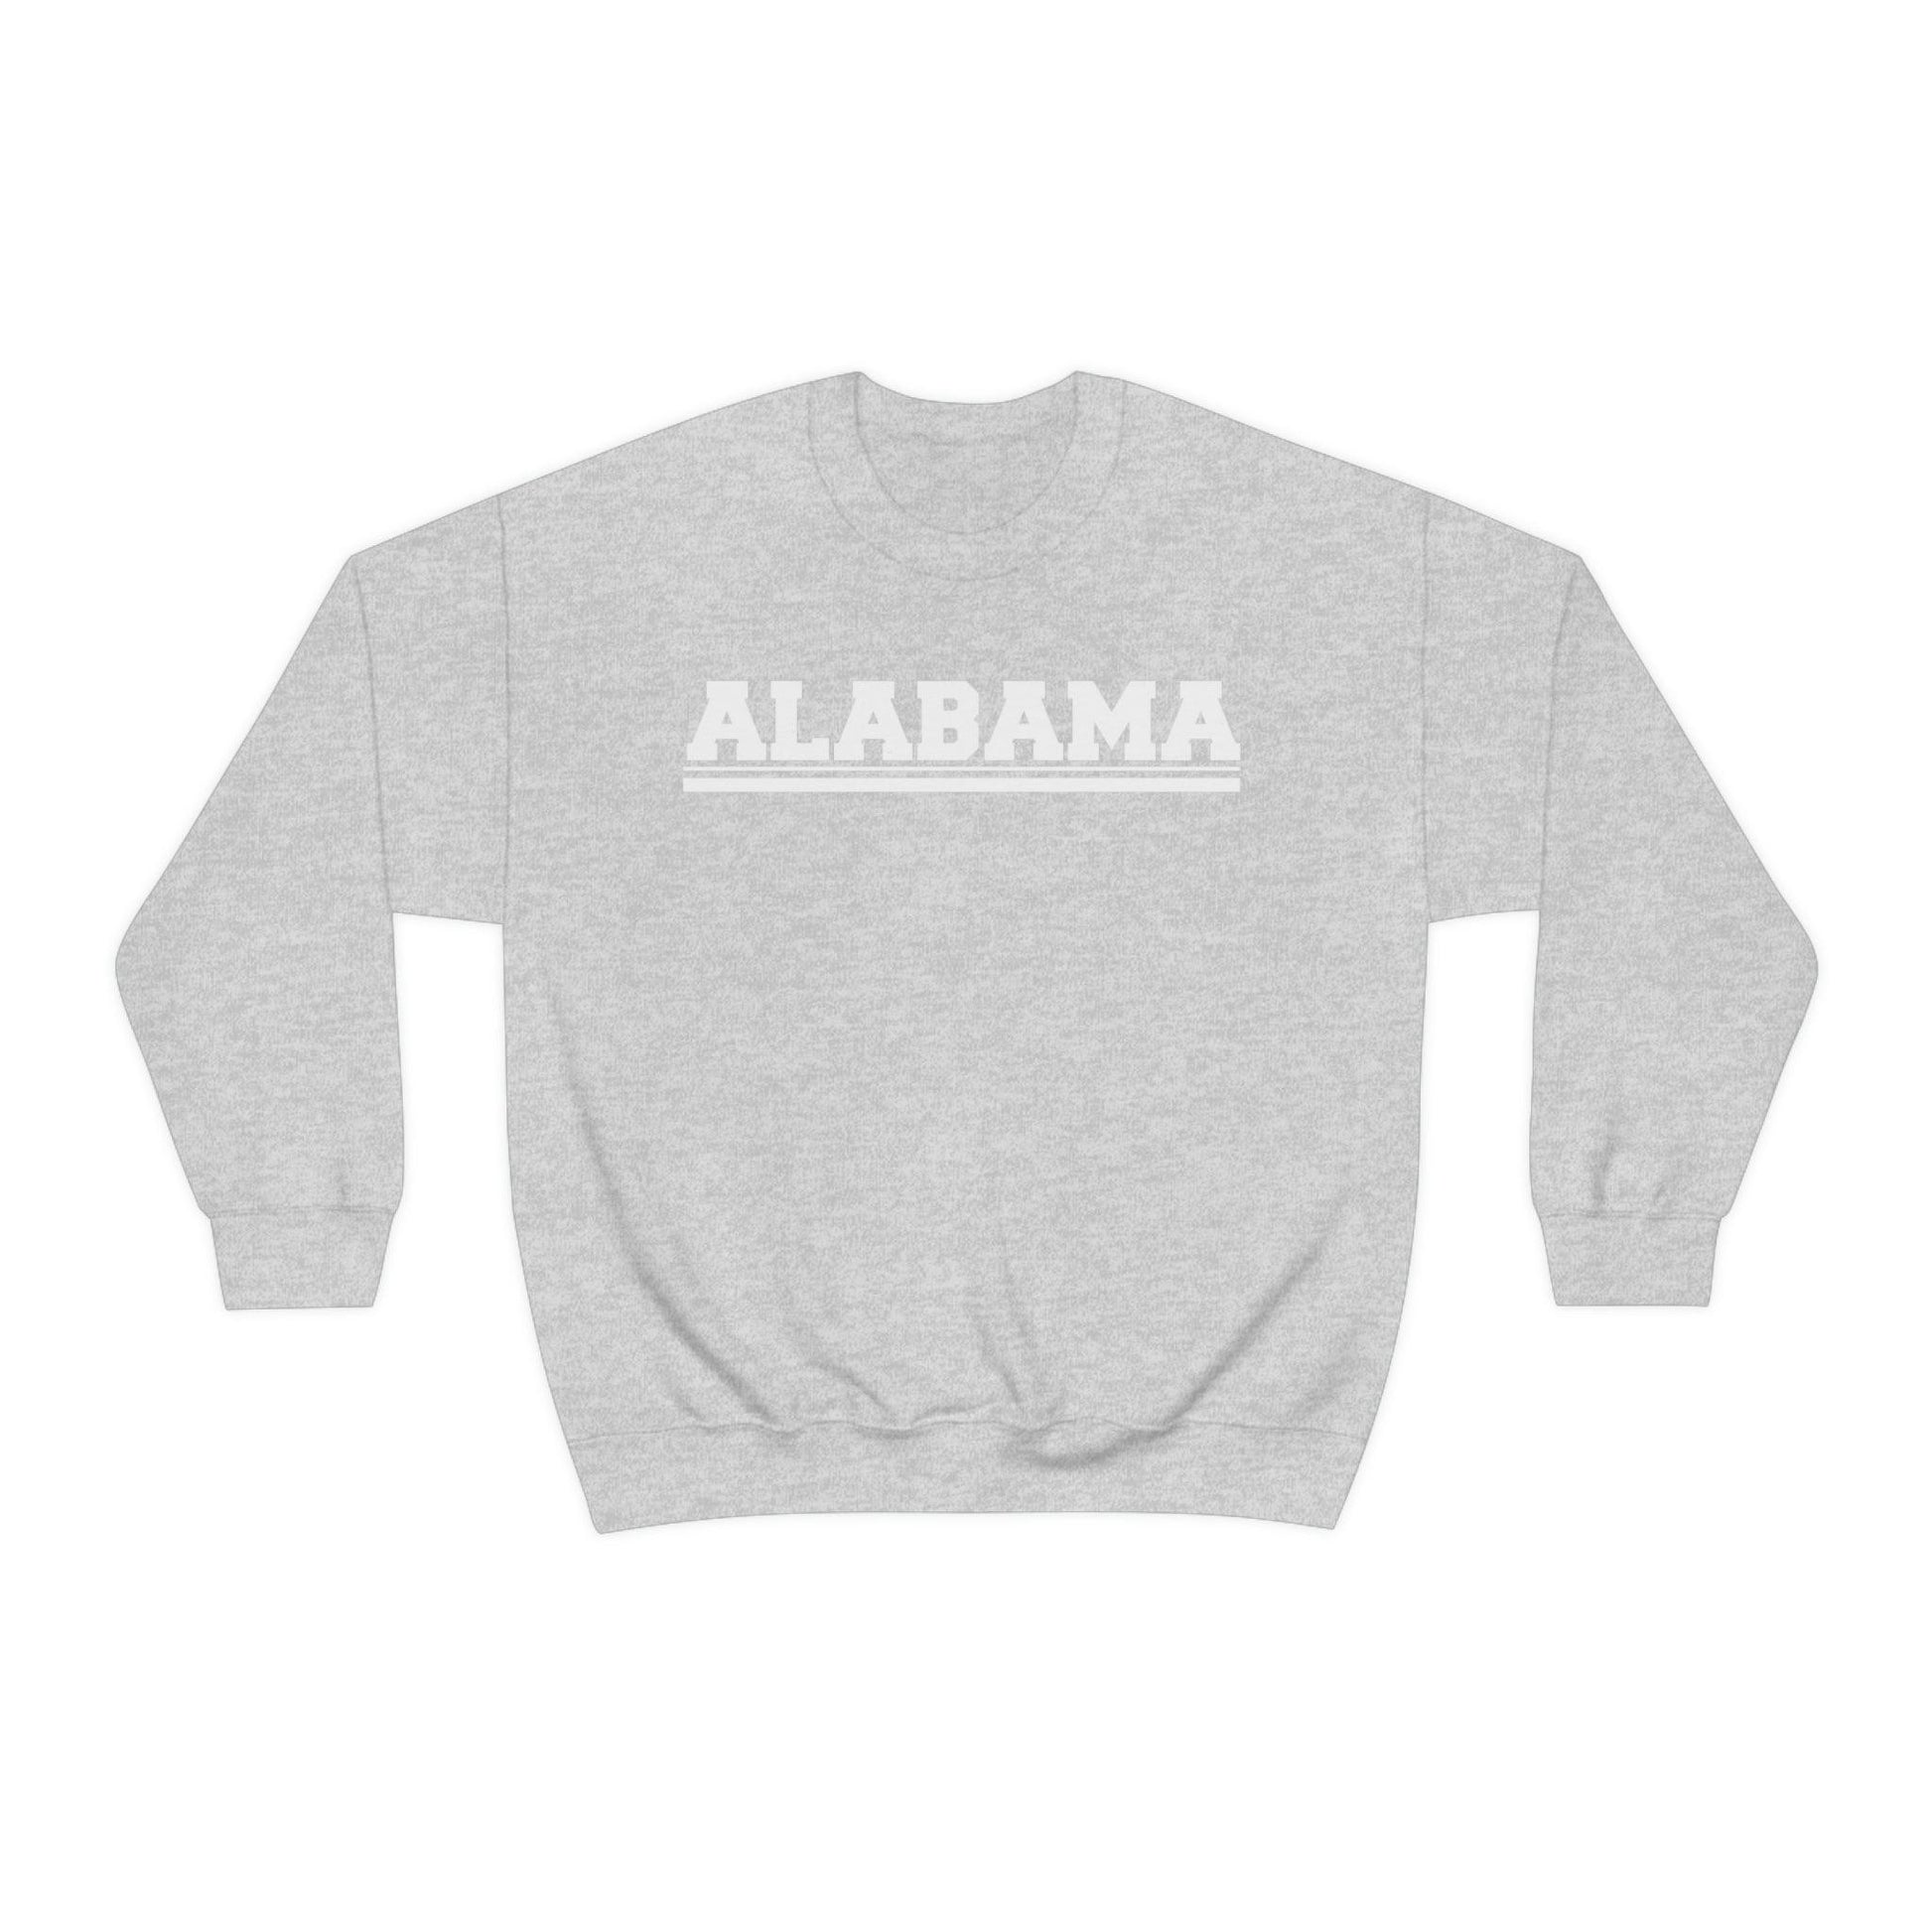 Home State Alabama Crewneck - BentleyBlueCo